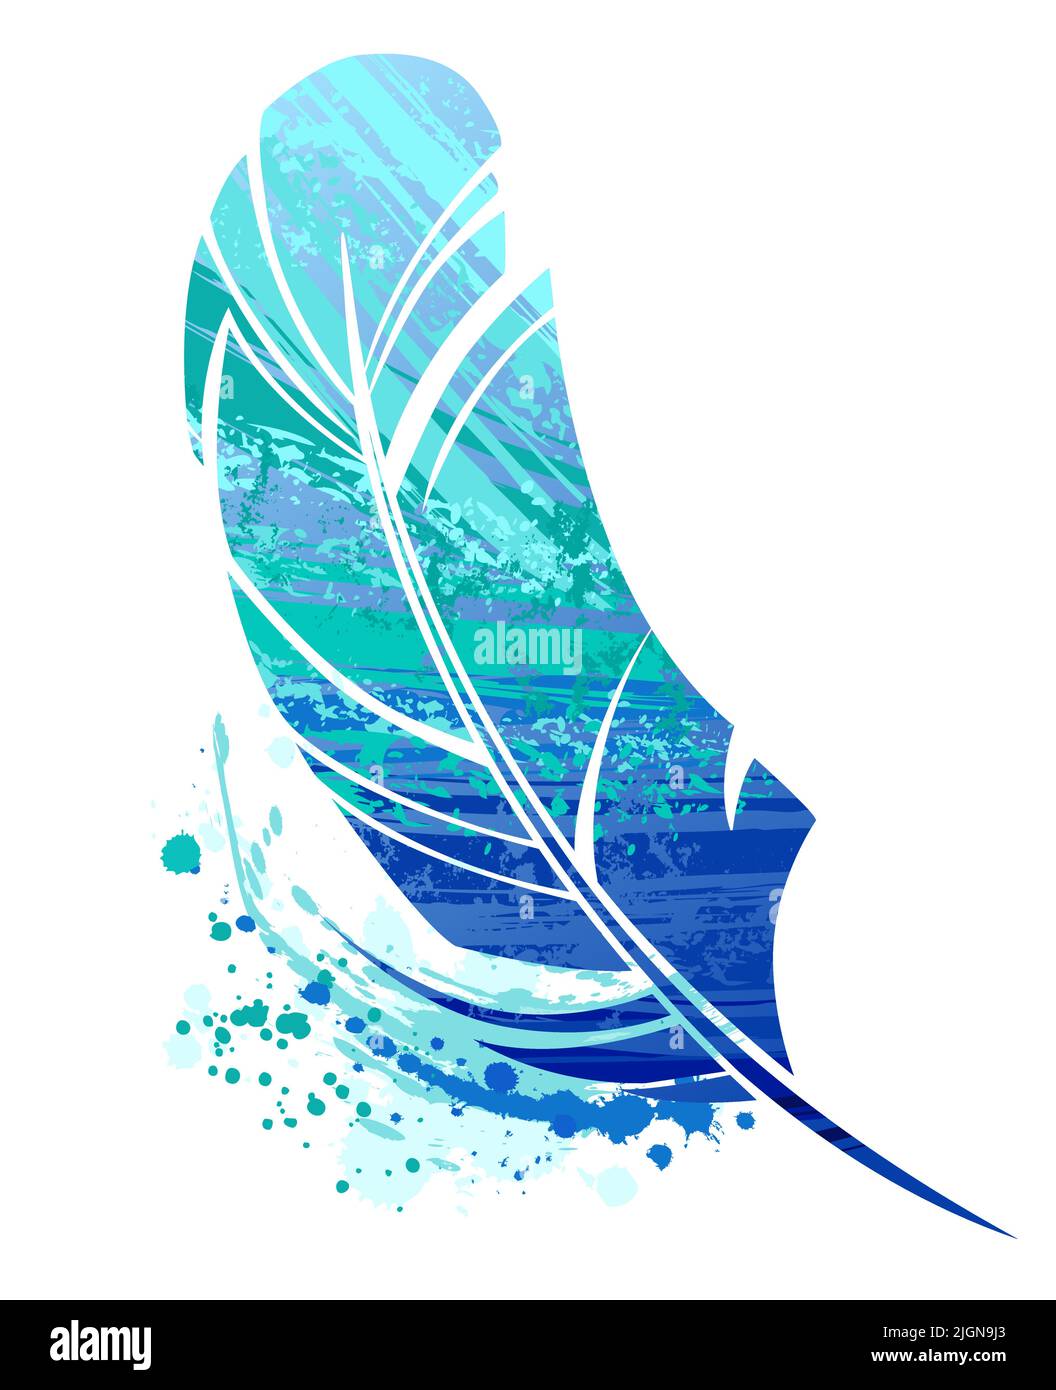 Pequeña pluma de pájaro pintada con grandes trazos de pintura acrílica azul y turquesa sobre fondo blanco. Dibujo descuidado Ilustración del Vector